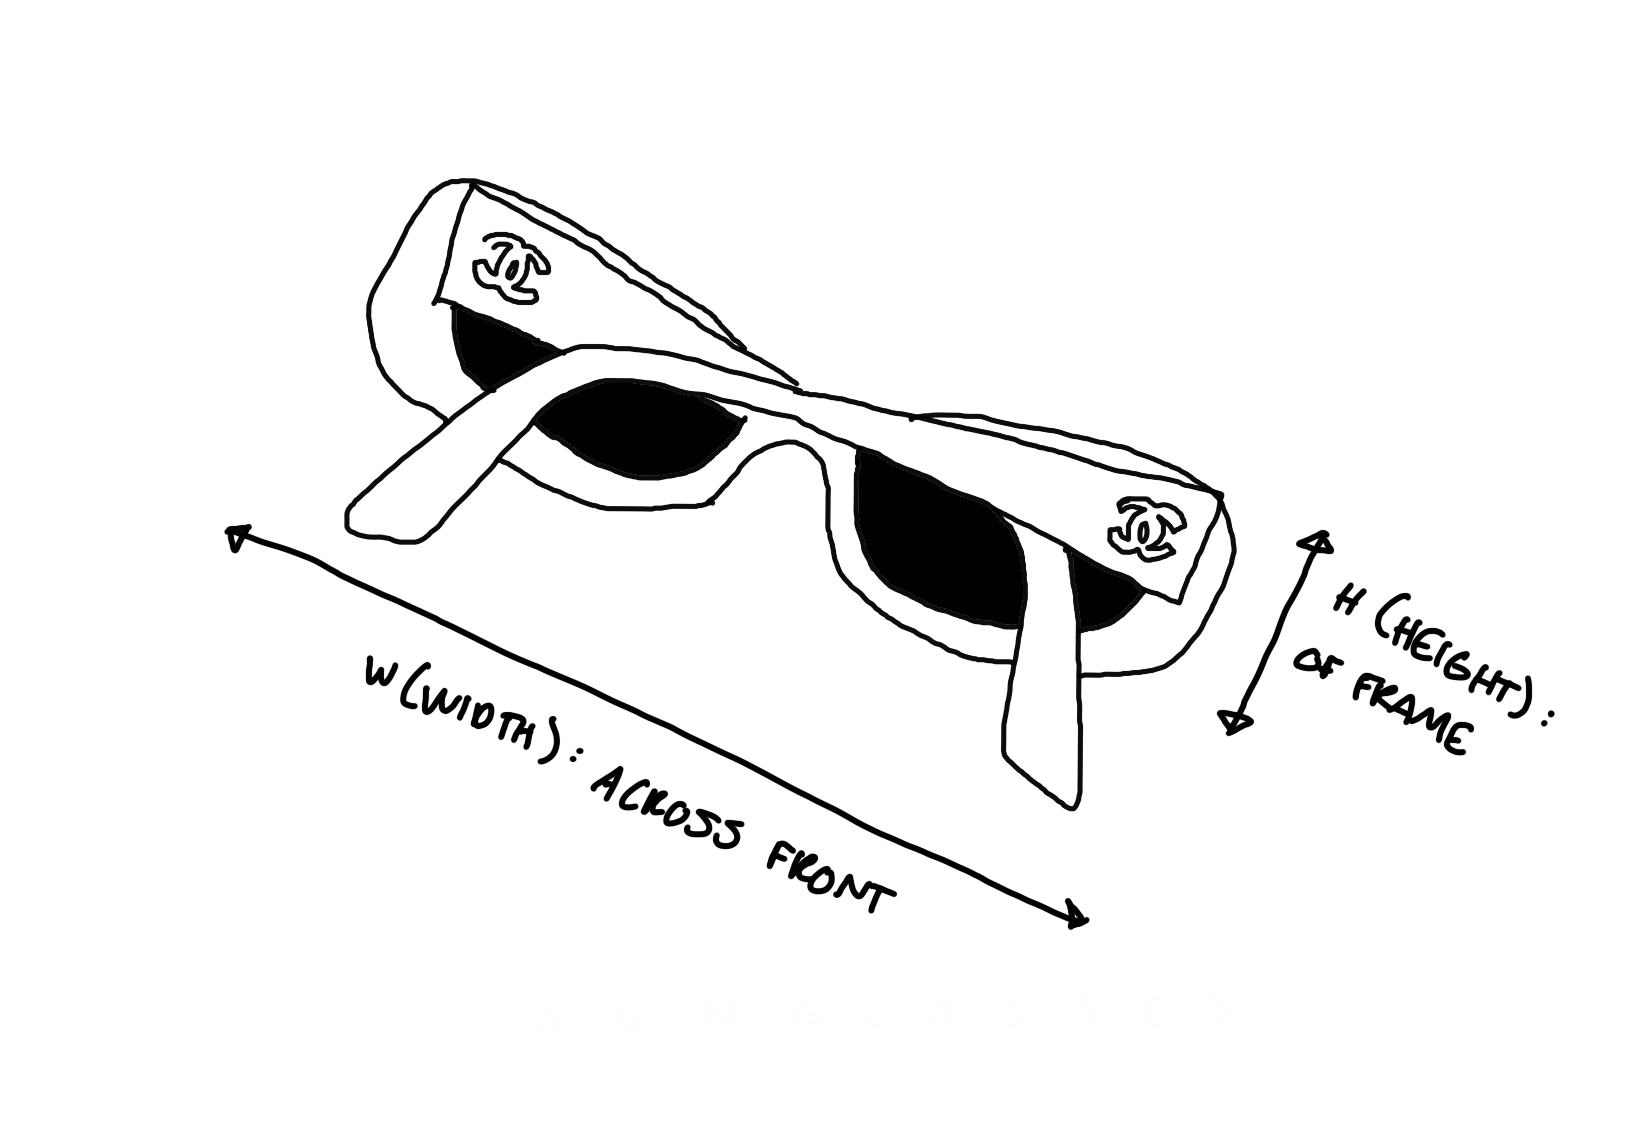 Dior Star Logo Sunglasses